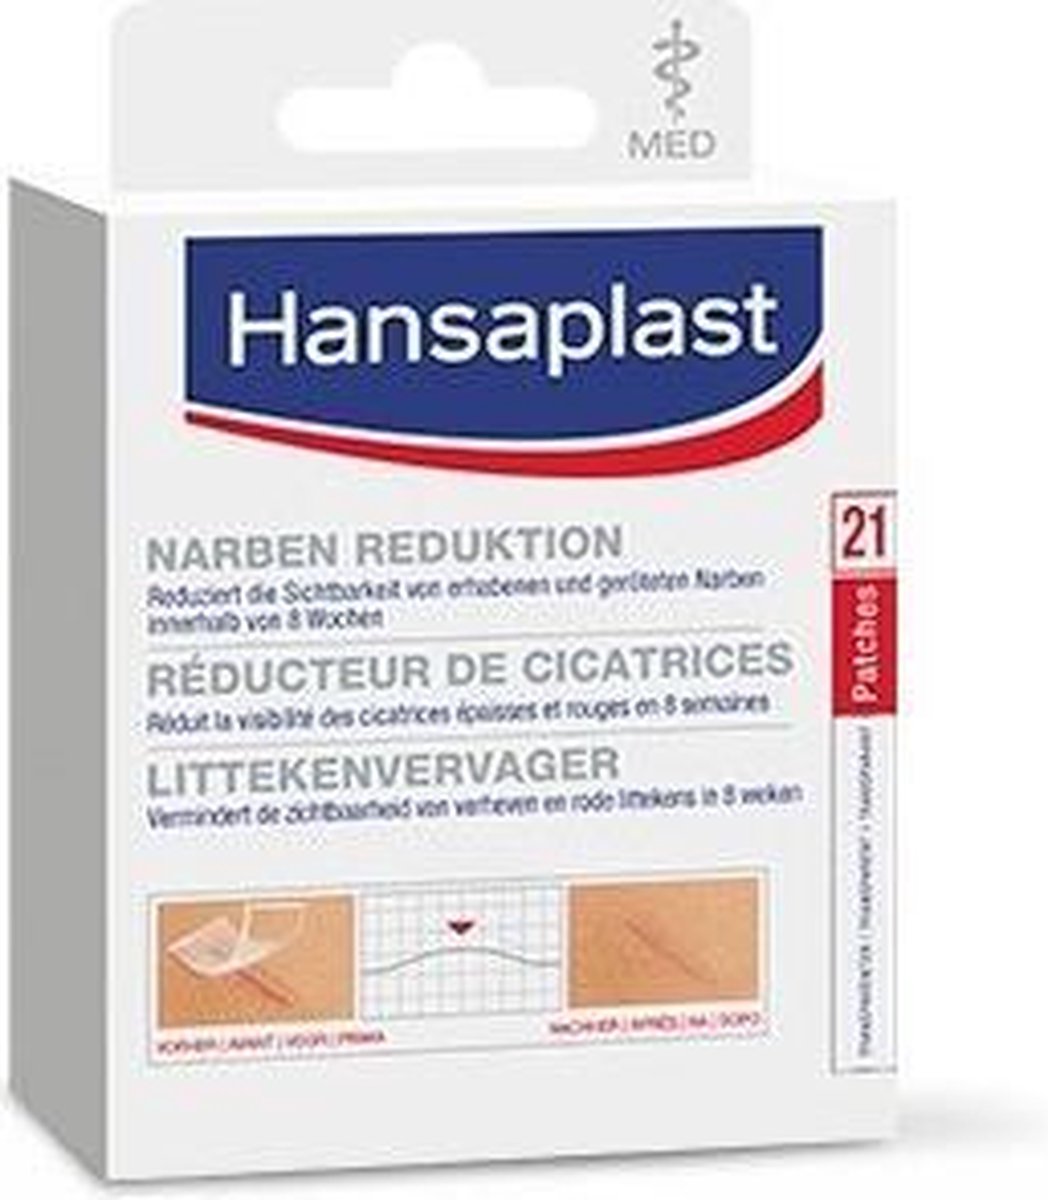 Hansaplast Med Littekenvervager | bol.com